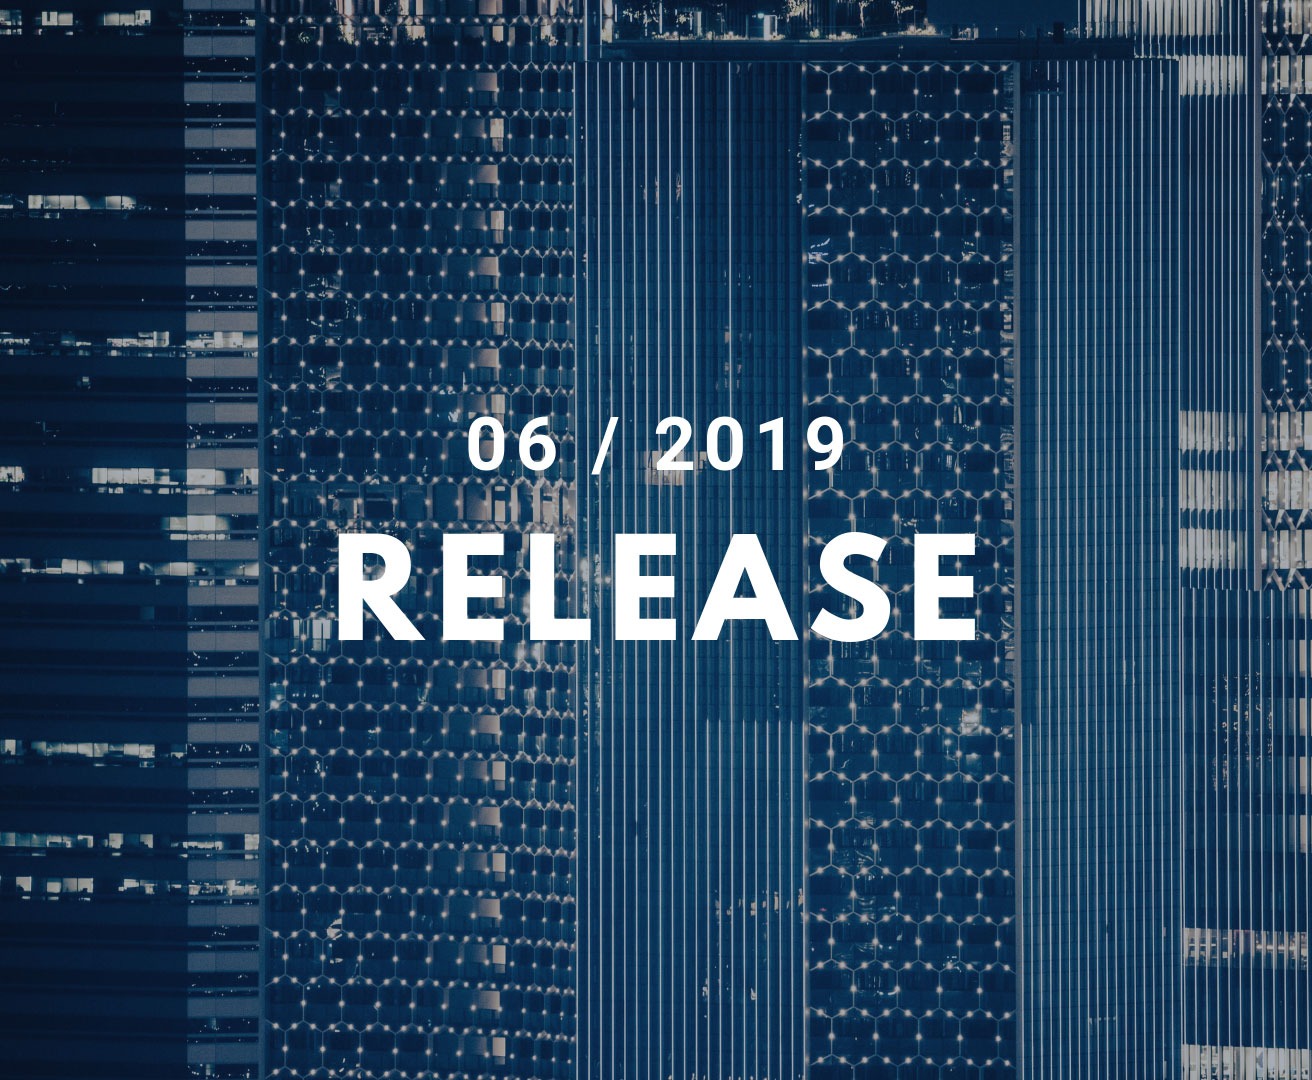 Hintergrund Hochhäuser, Vordergrund Titel 06 / 2019 Release, als Symbolbild für Erweiterungen und Verbesserungen